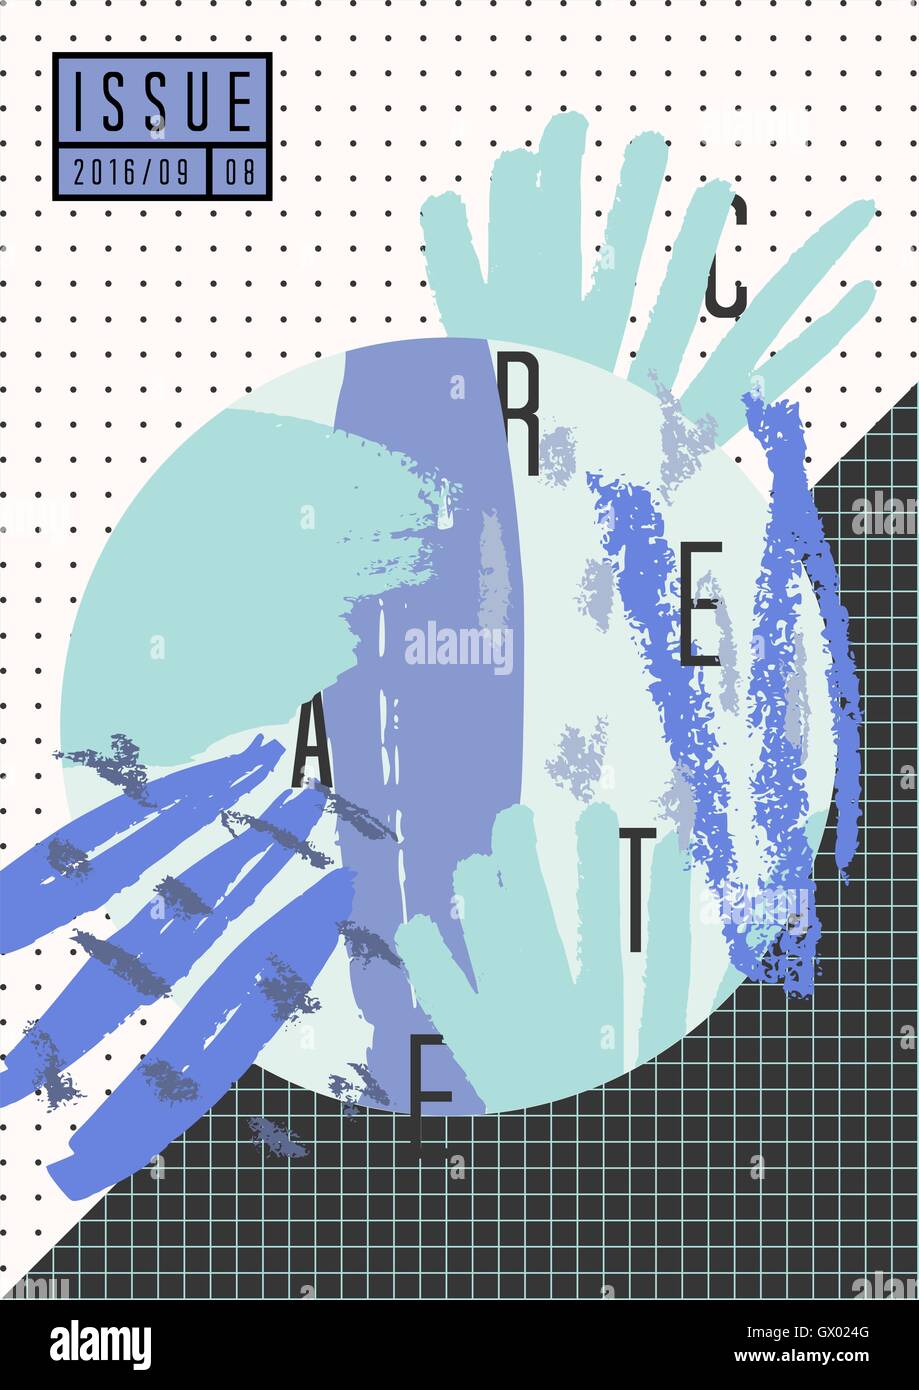 Abstrakte Komposition Collage in schwarz, weiß, blau und violett. Minimalistischen Stil Plakat, Broschüre, Magazin-Cover-Design. Stock Vektor